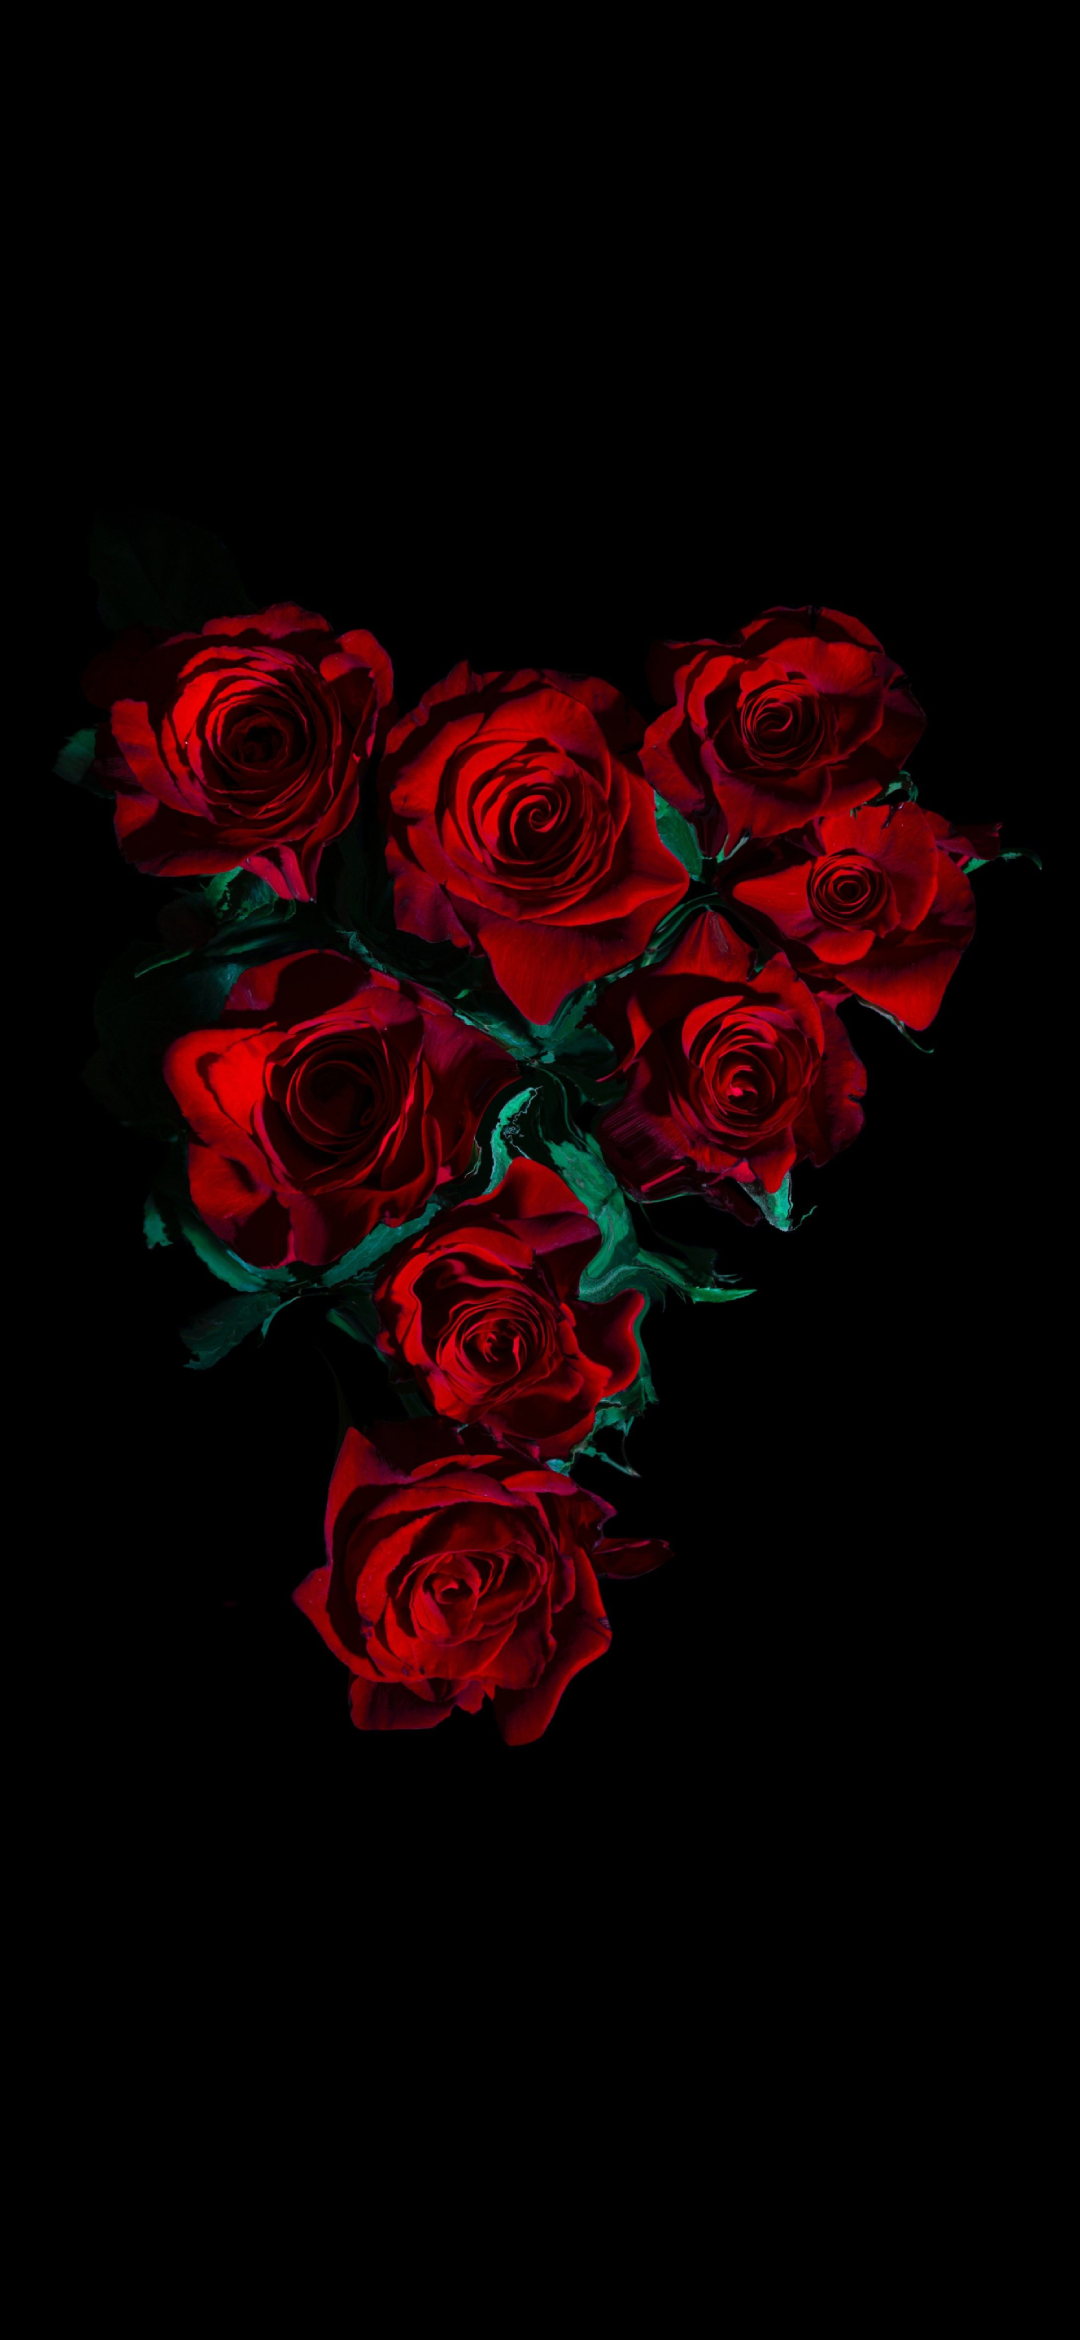 綺麗な薔薇の花 高画質 Zenfone 6 壁紙 待ち受け スマラン